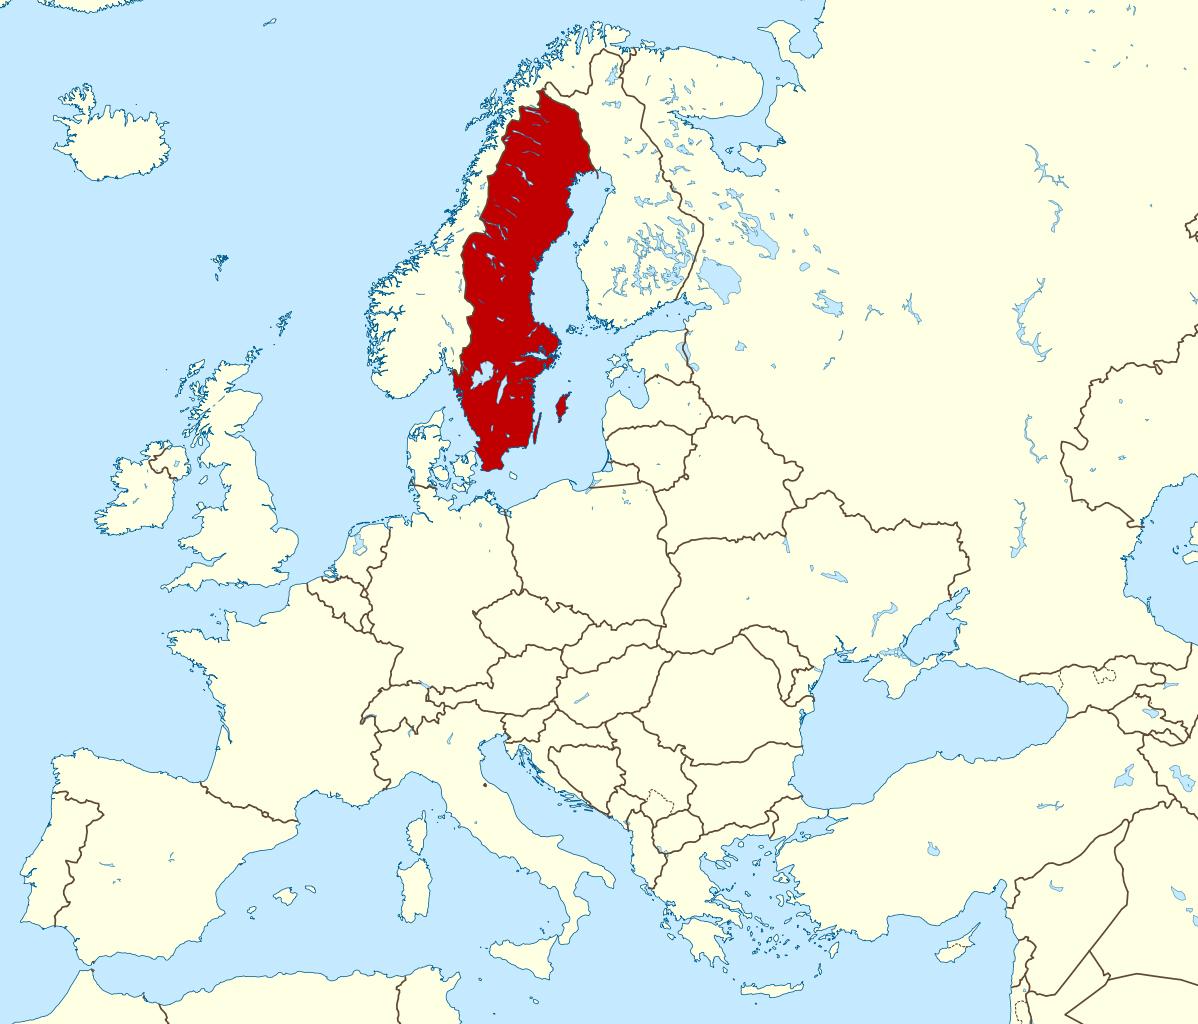 Álbumes 95+ Imagen De Fondo Mapa De Finlandia Y Suecia El último